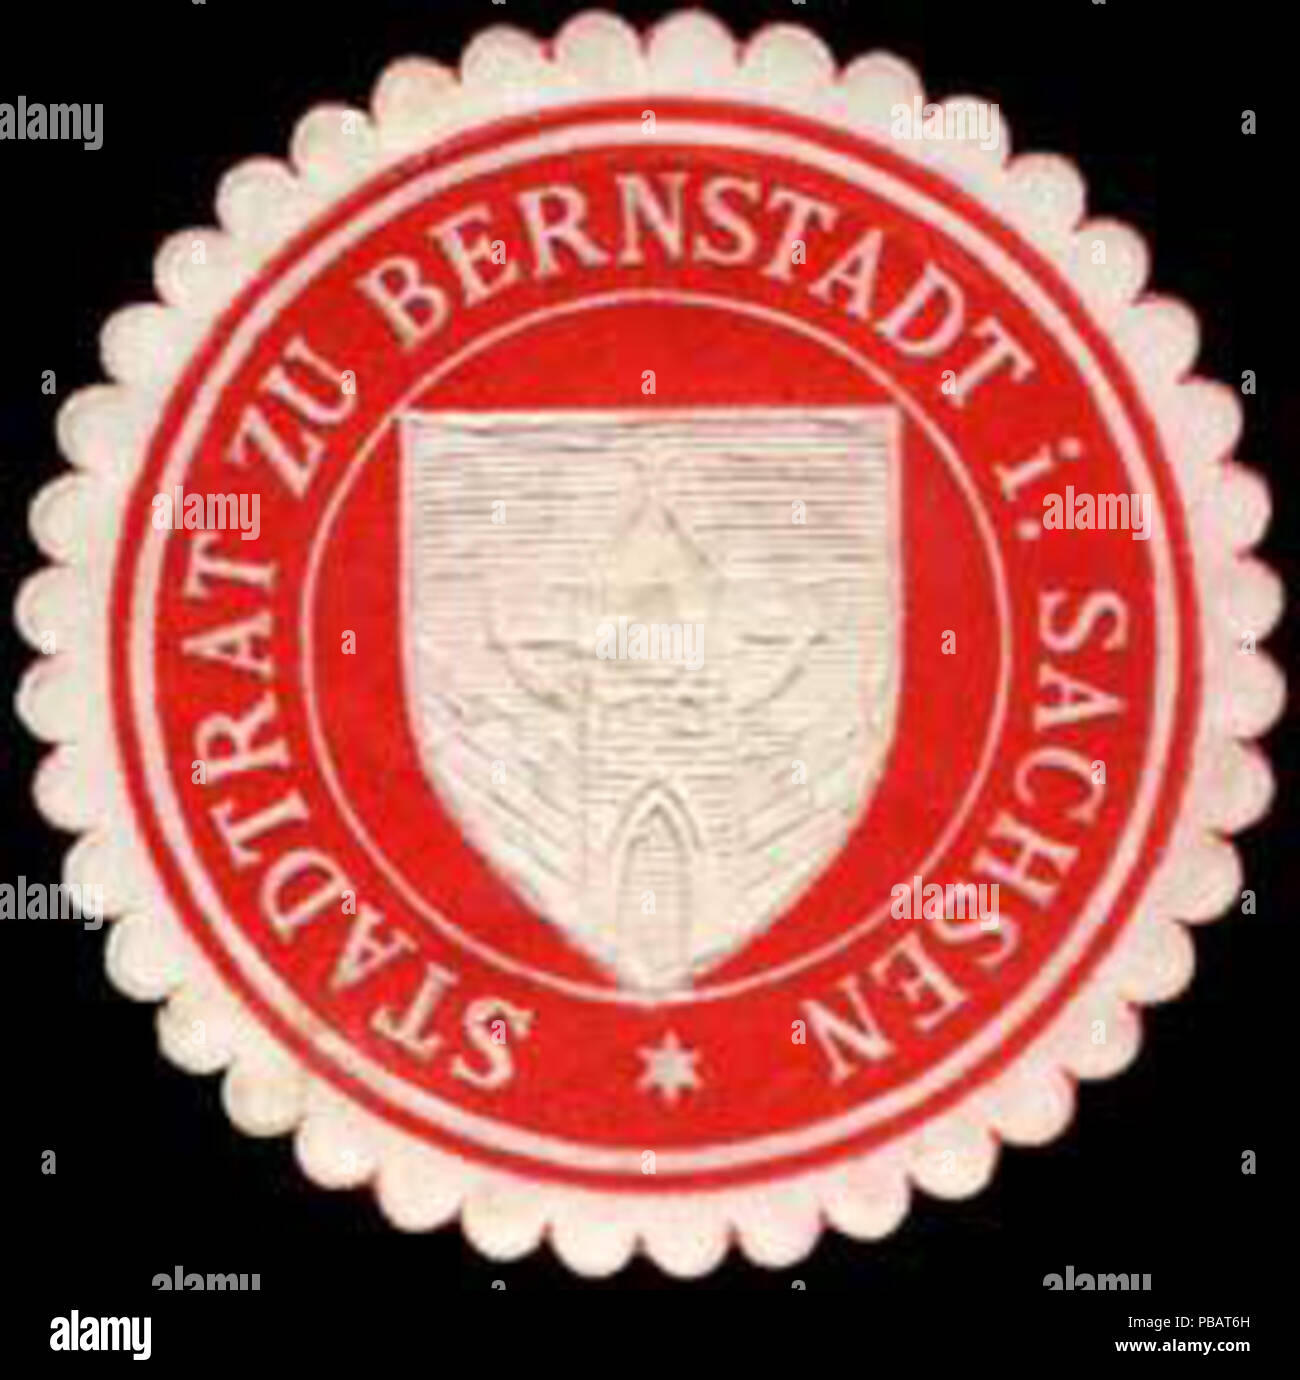 1524 Siegelmarke Stadtrat zu Bernstadt in Sachsen W0307516 Stock Photo